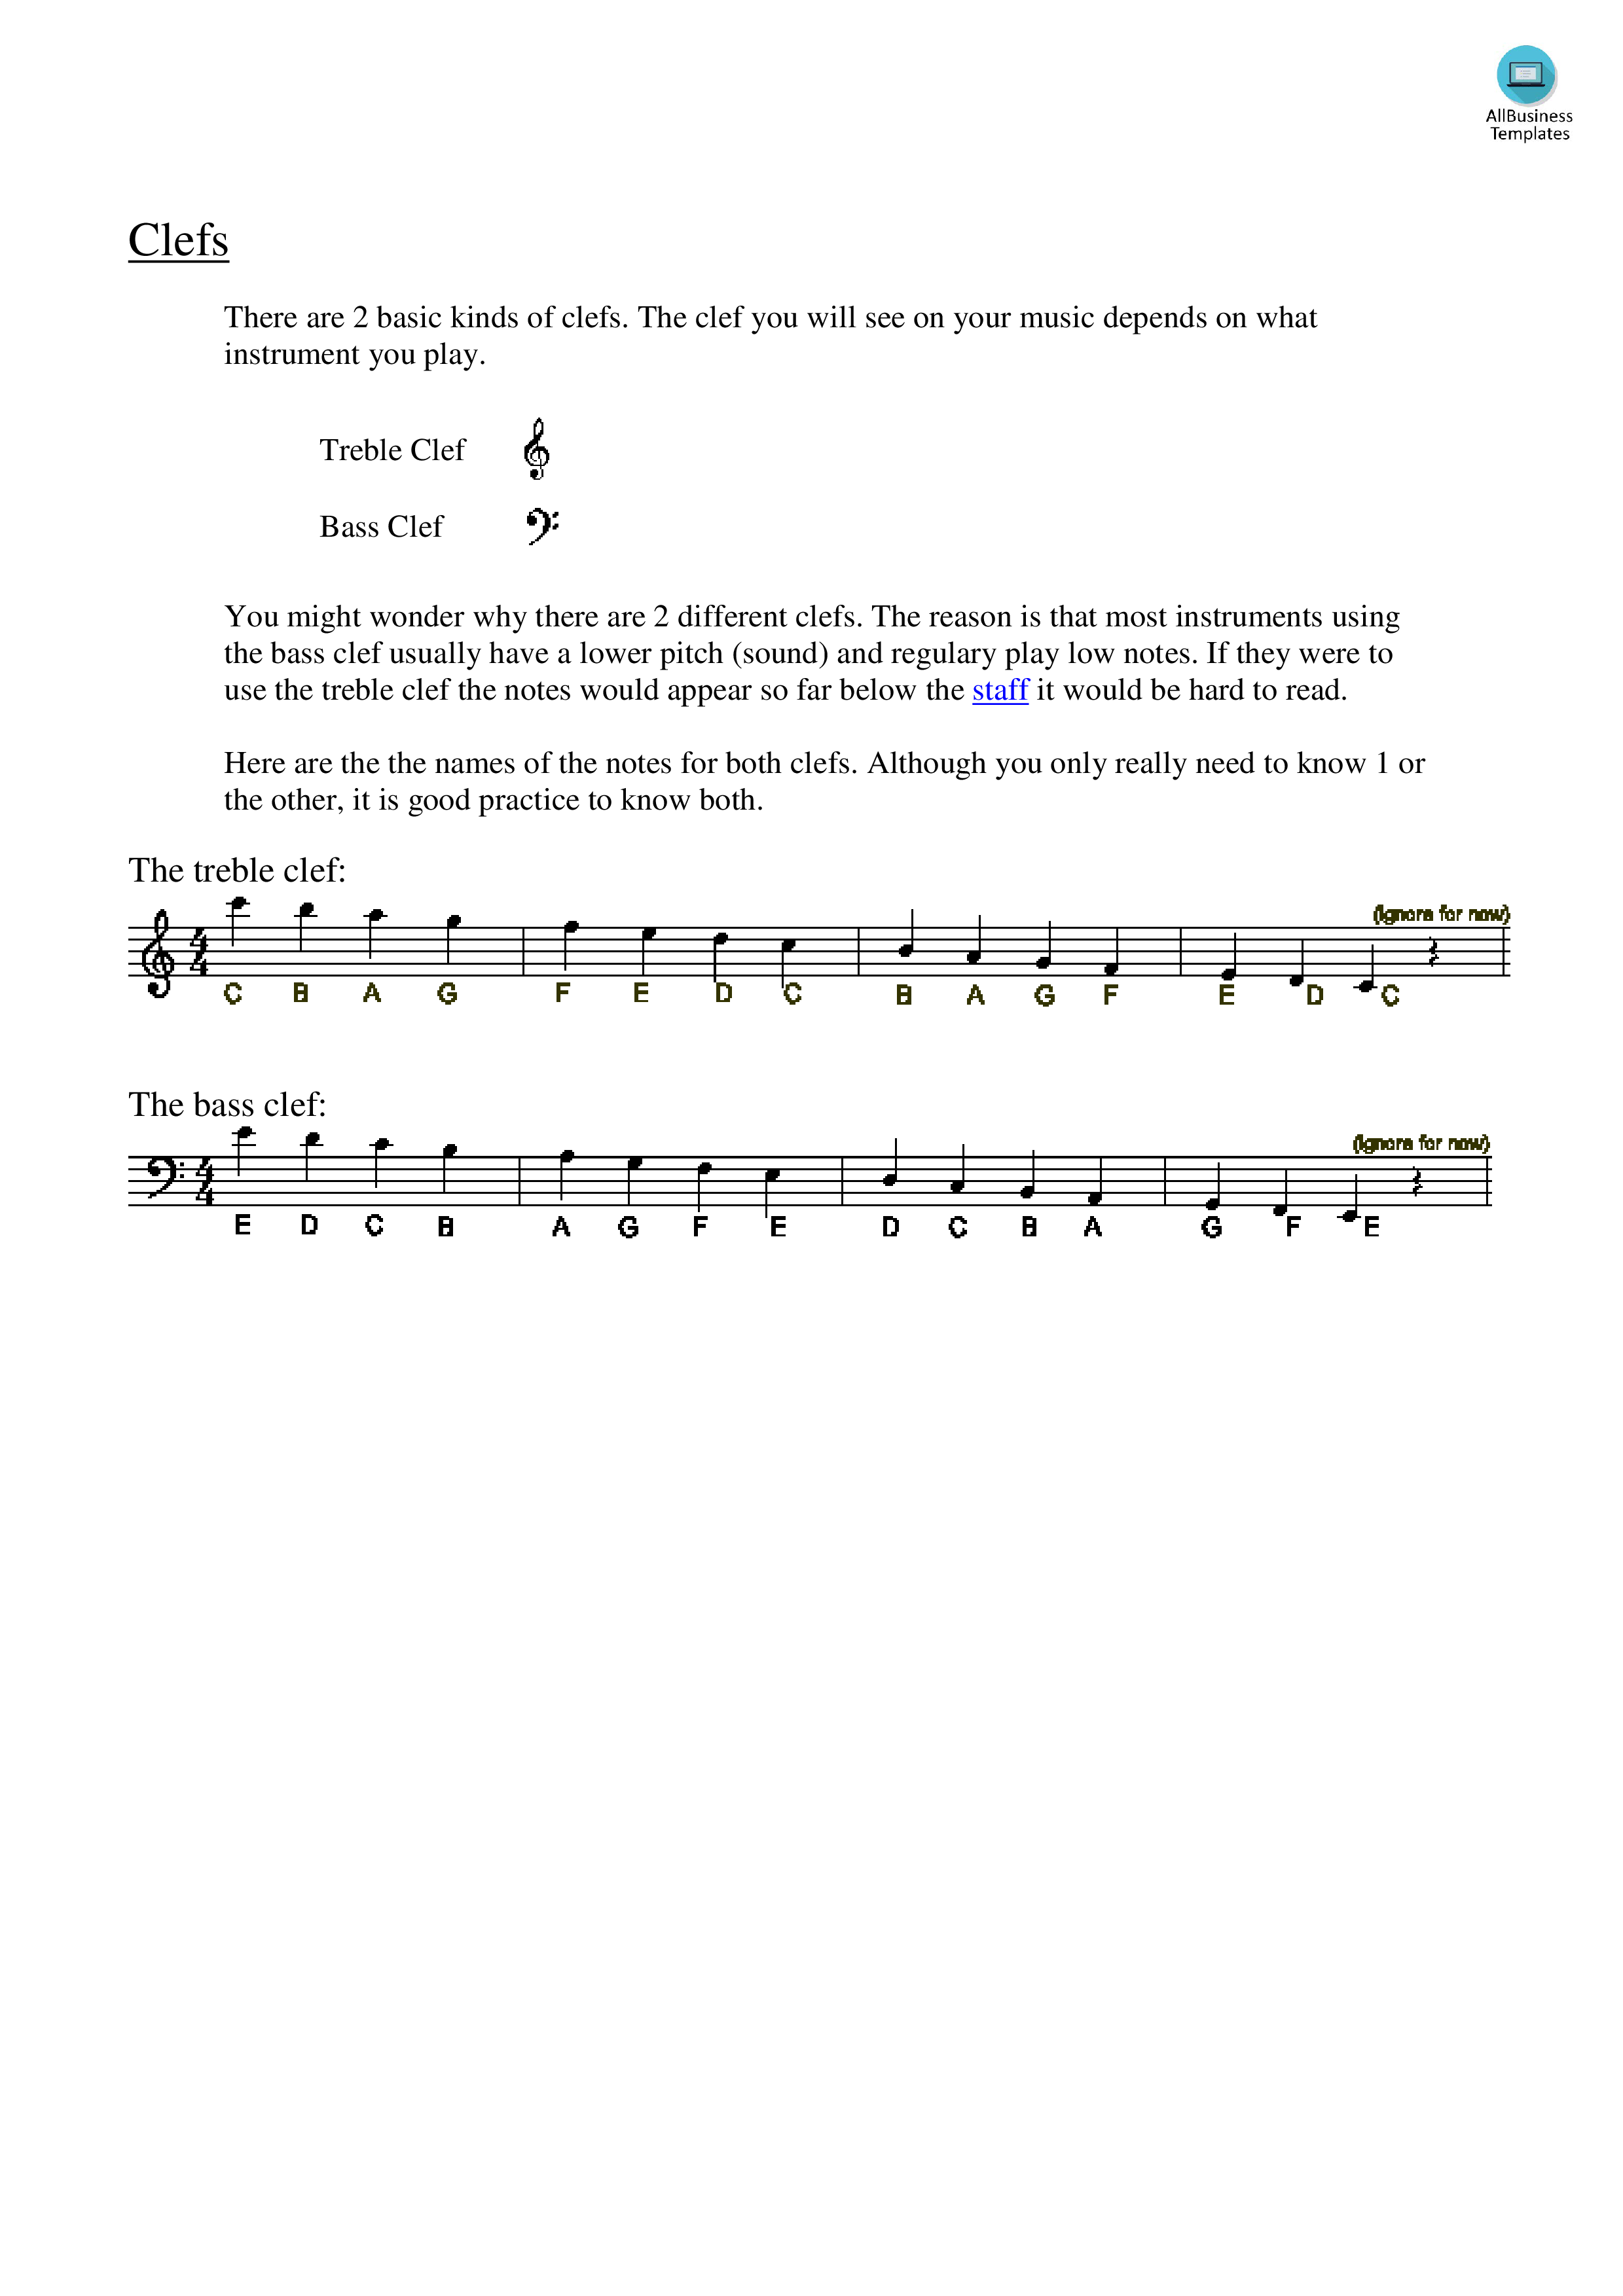 piano clef notes chart voorbeeld afbeelding 